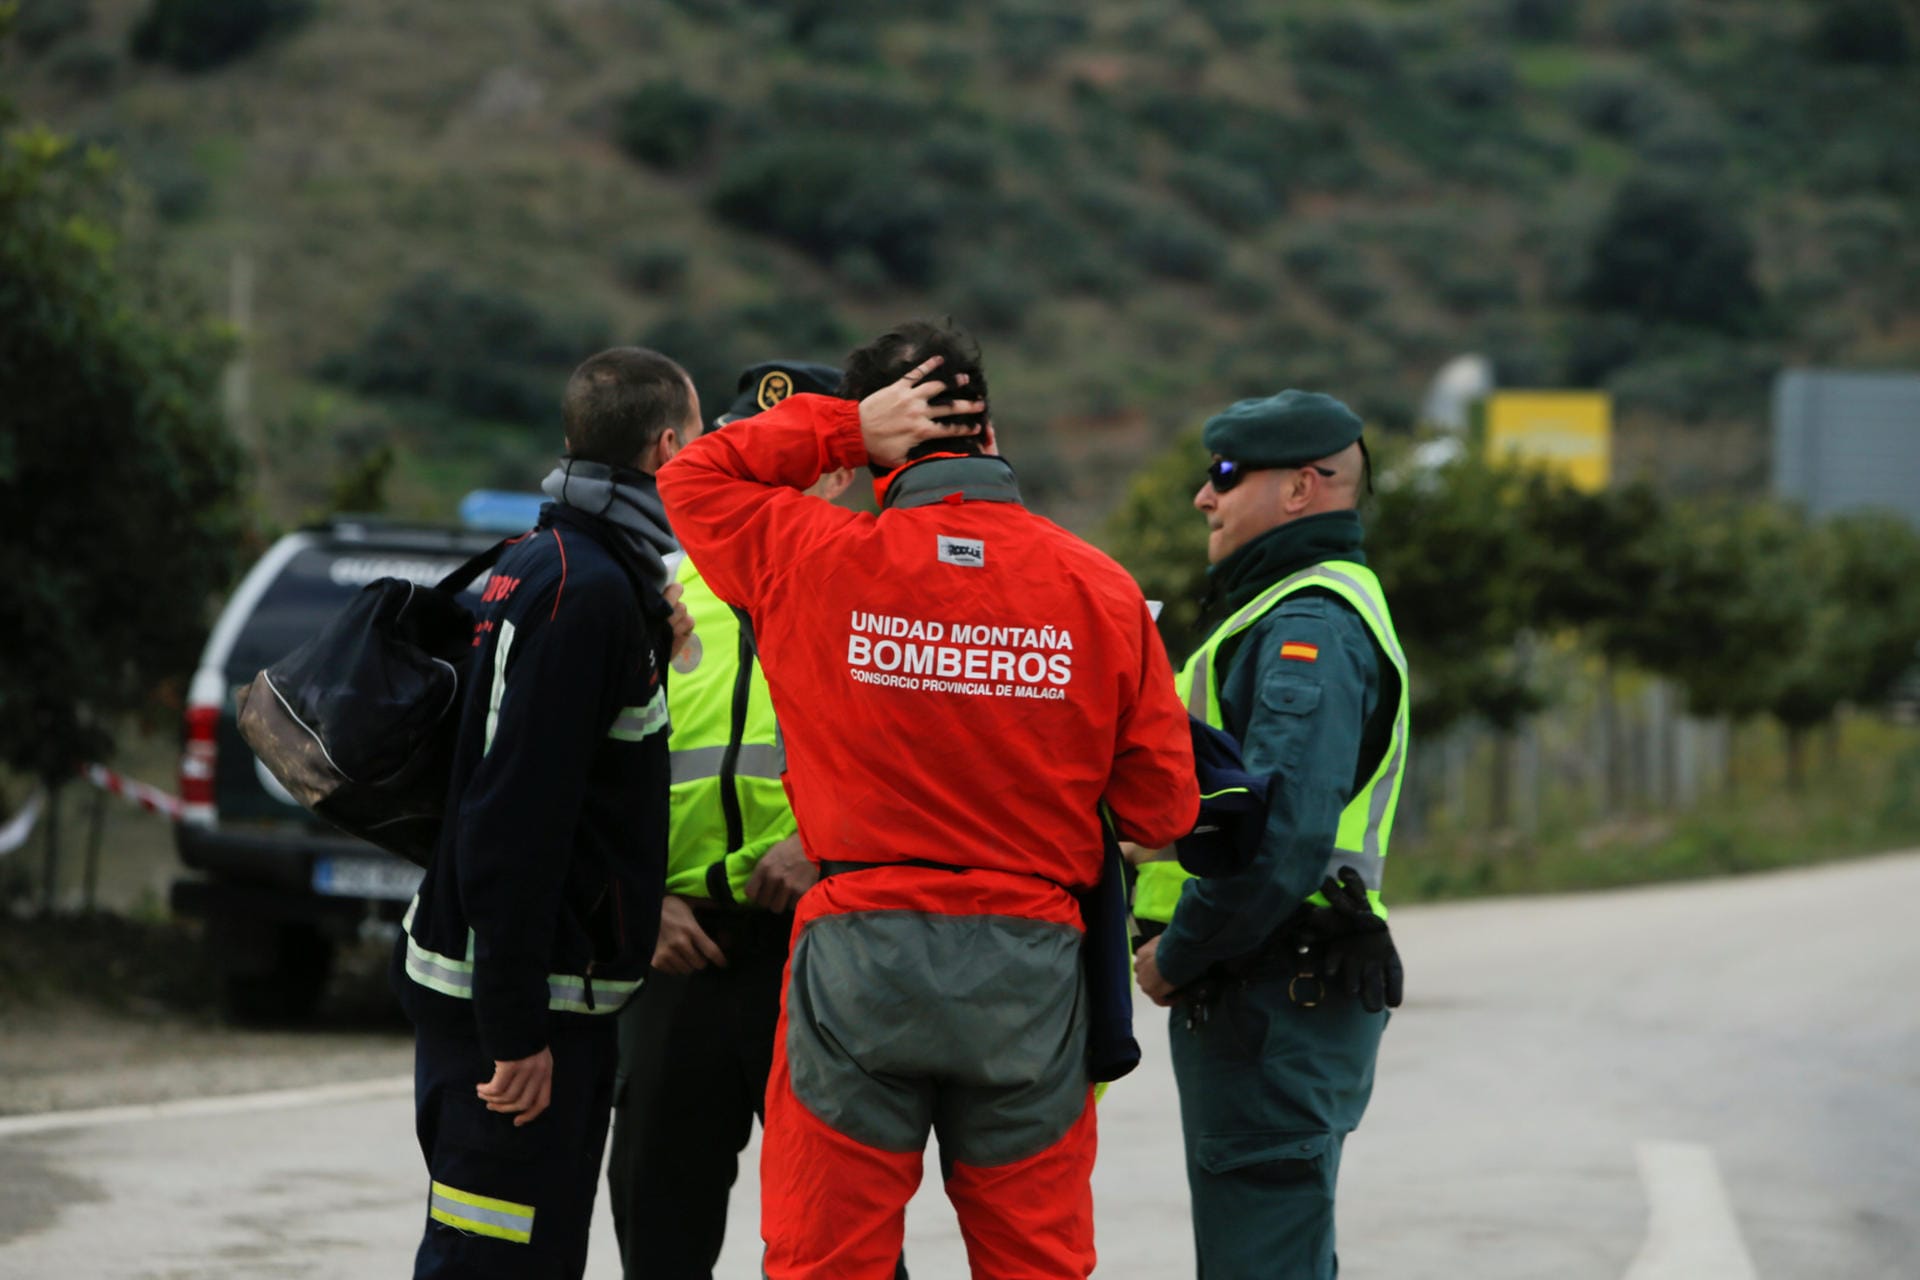 Feuerwehrleute der Bergwacht unterhalten sich mit spanischen Polizisten: "Julen ist inzwischen zum Sohn von uns allen geworden", sagt ein Ingenieur, der mit 100 Helfern an Julens Rettung arbeitet.